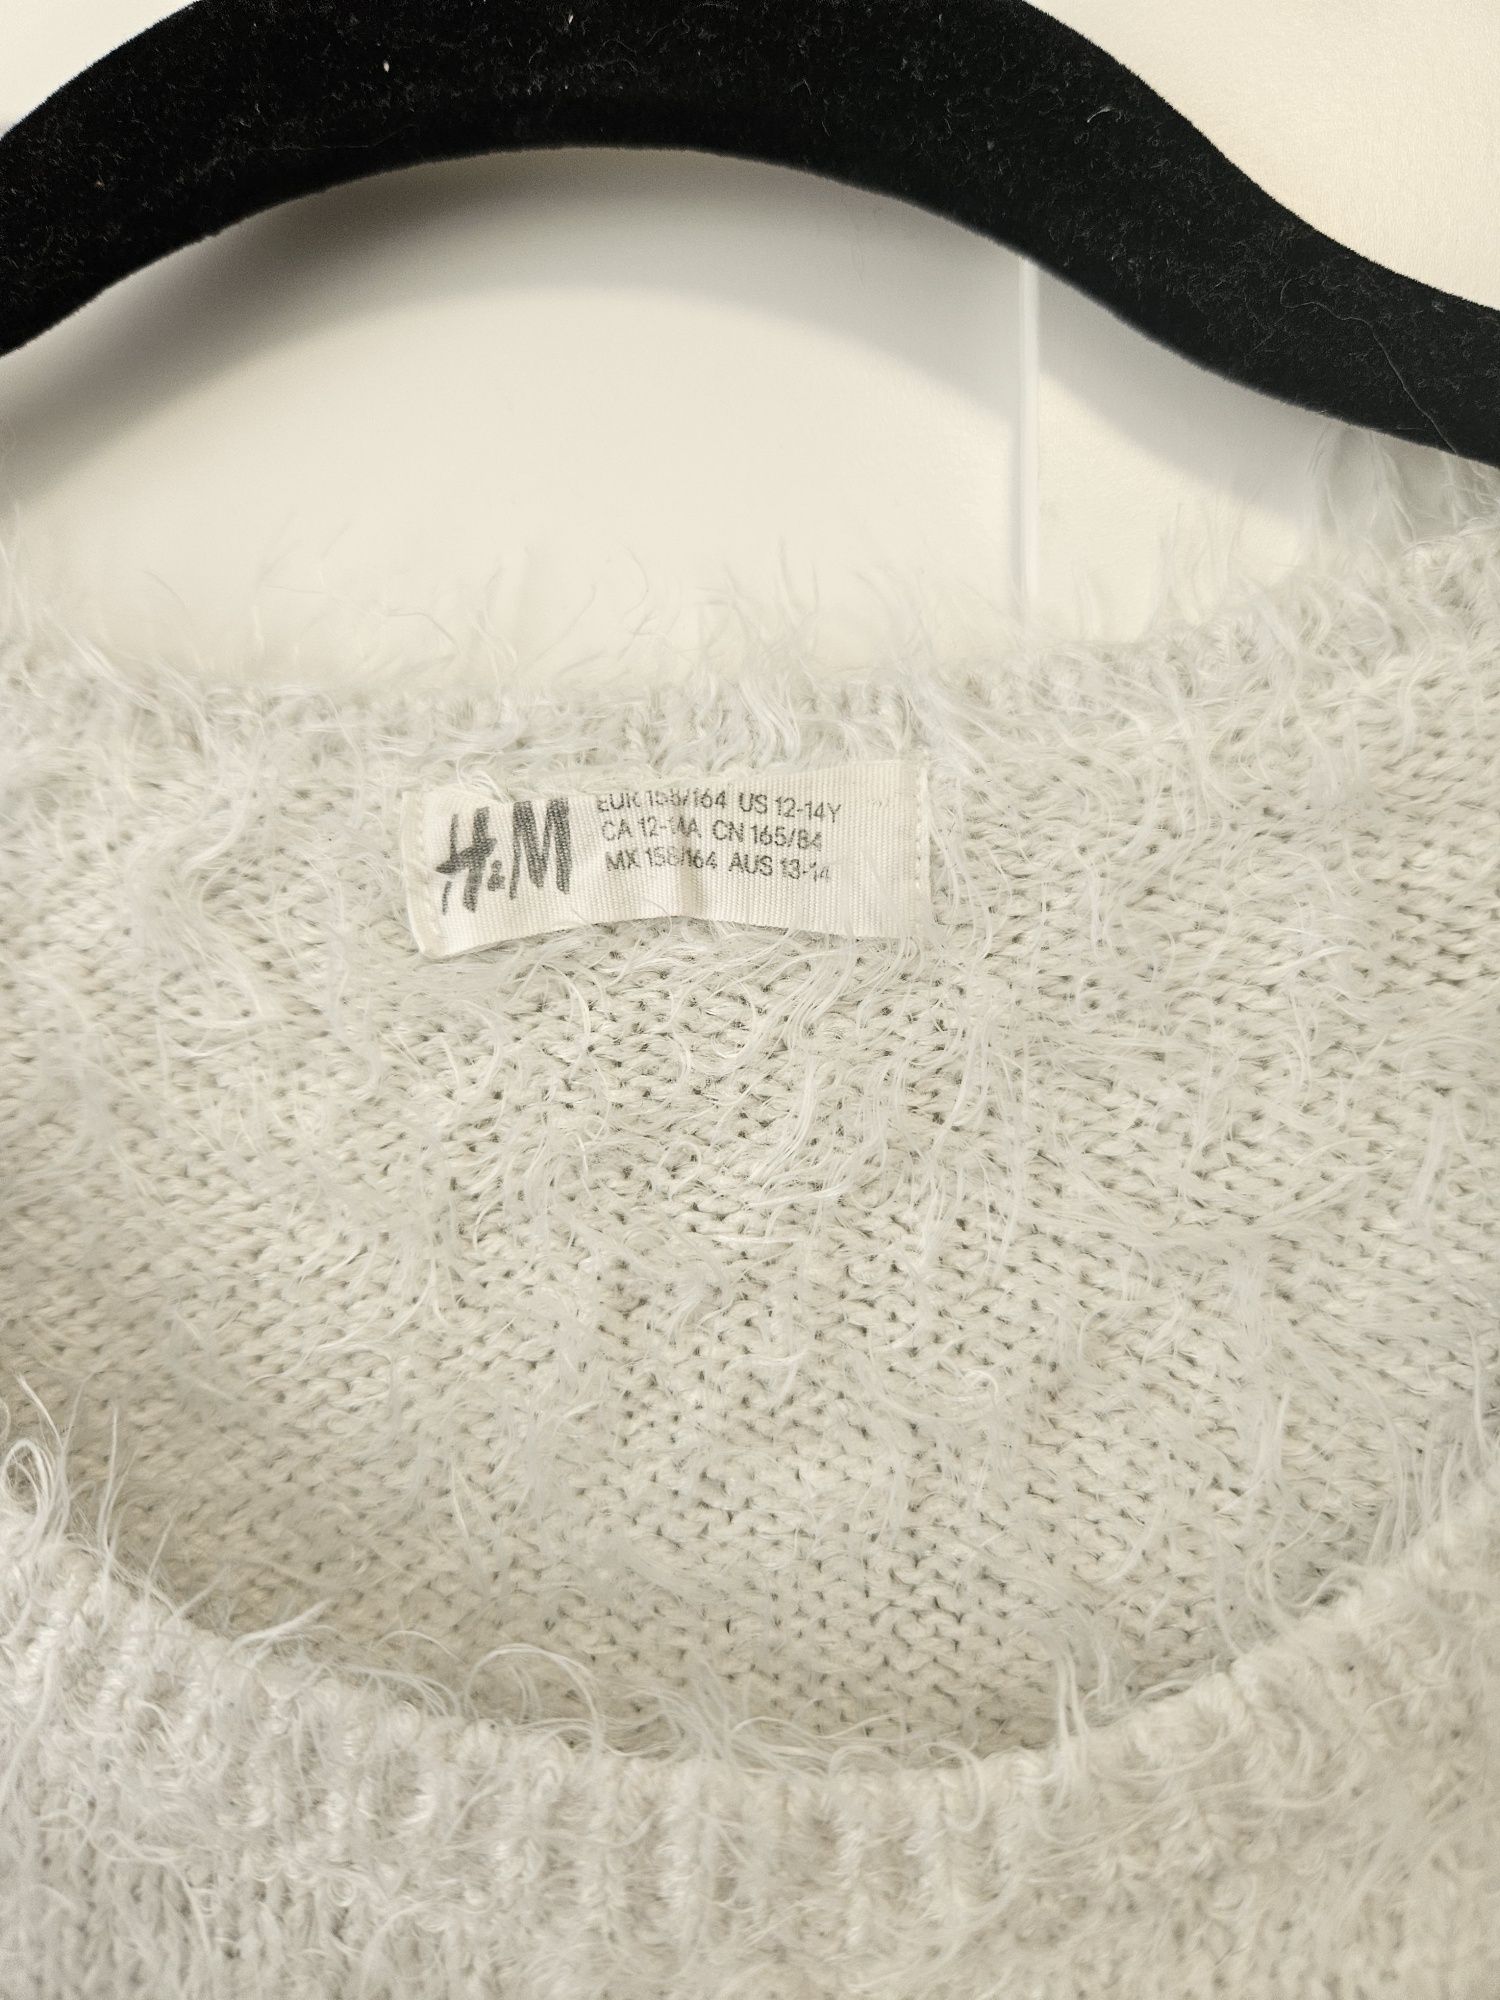 Bluza pufoasa cu print pisica
H&M
Marimea 158/164
Potrivita pentru XS/